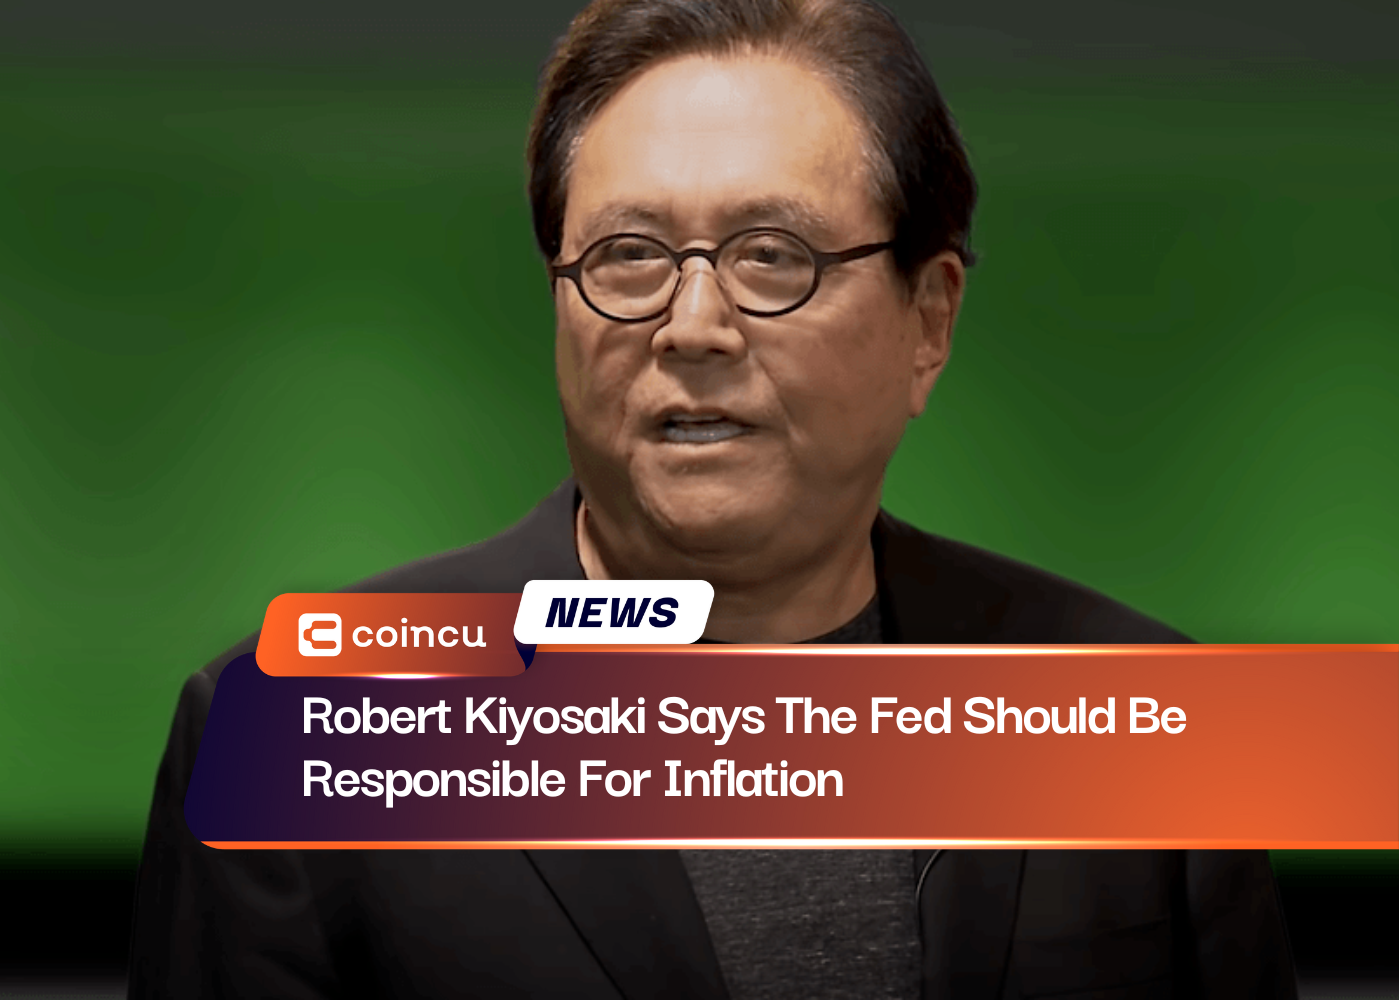 Robert Kiyosaki diz que o Fed deveria ser responsável pela inflação